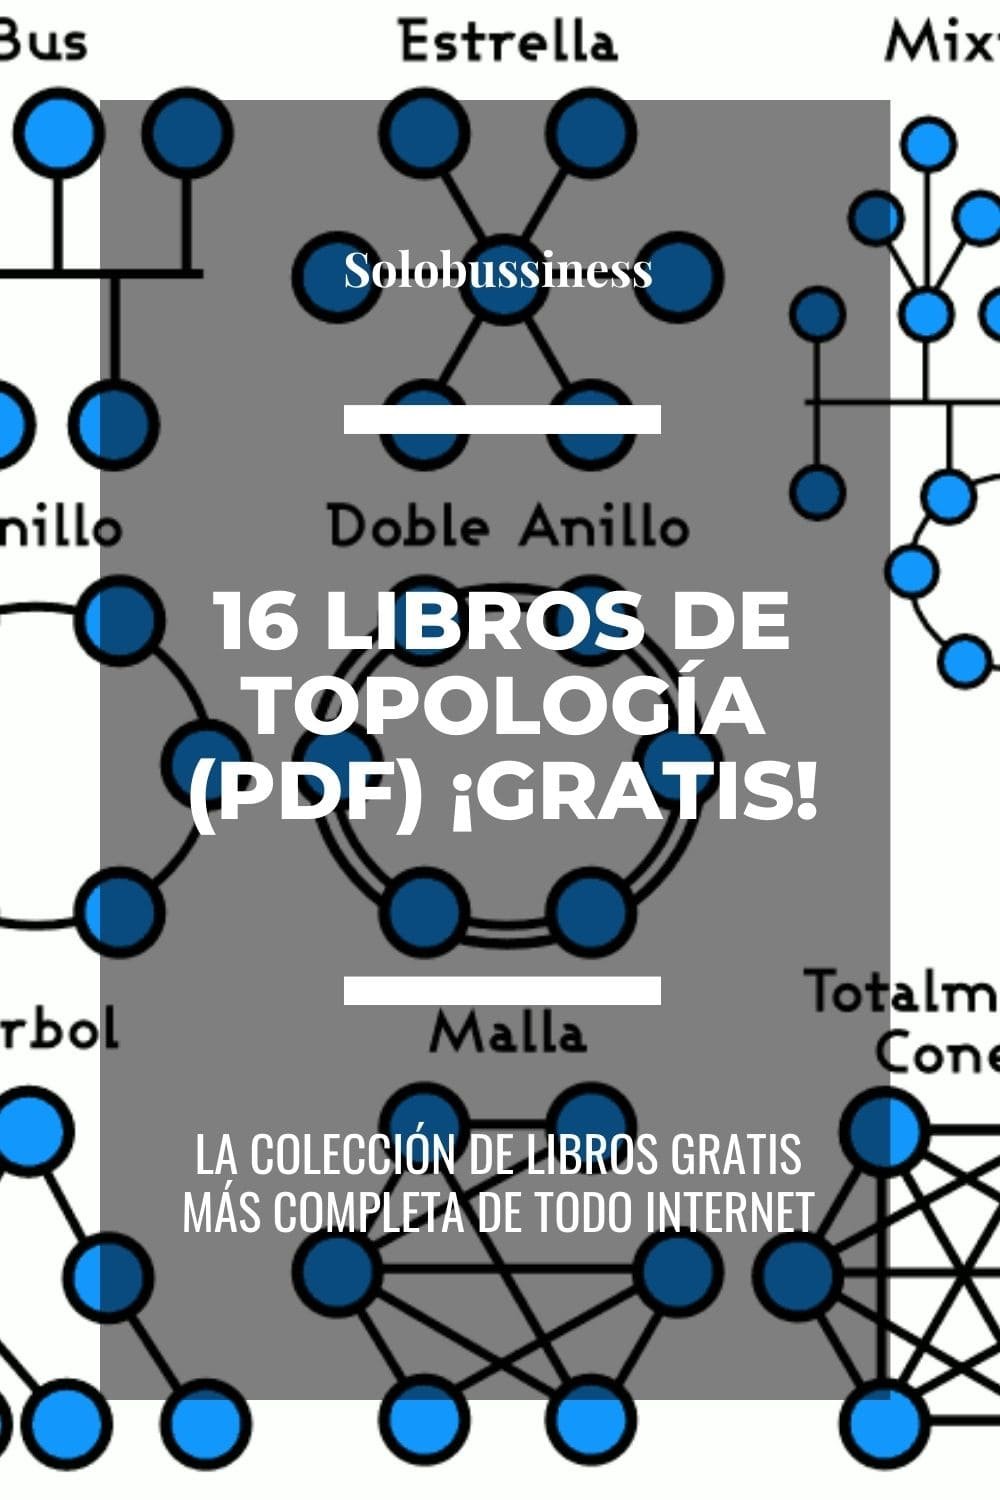 Libros de Topología en formato pdf